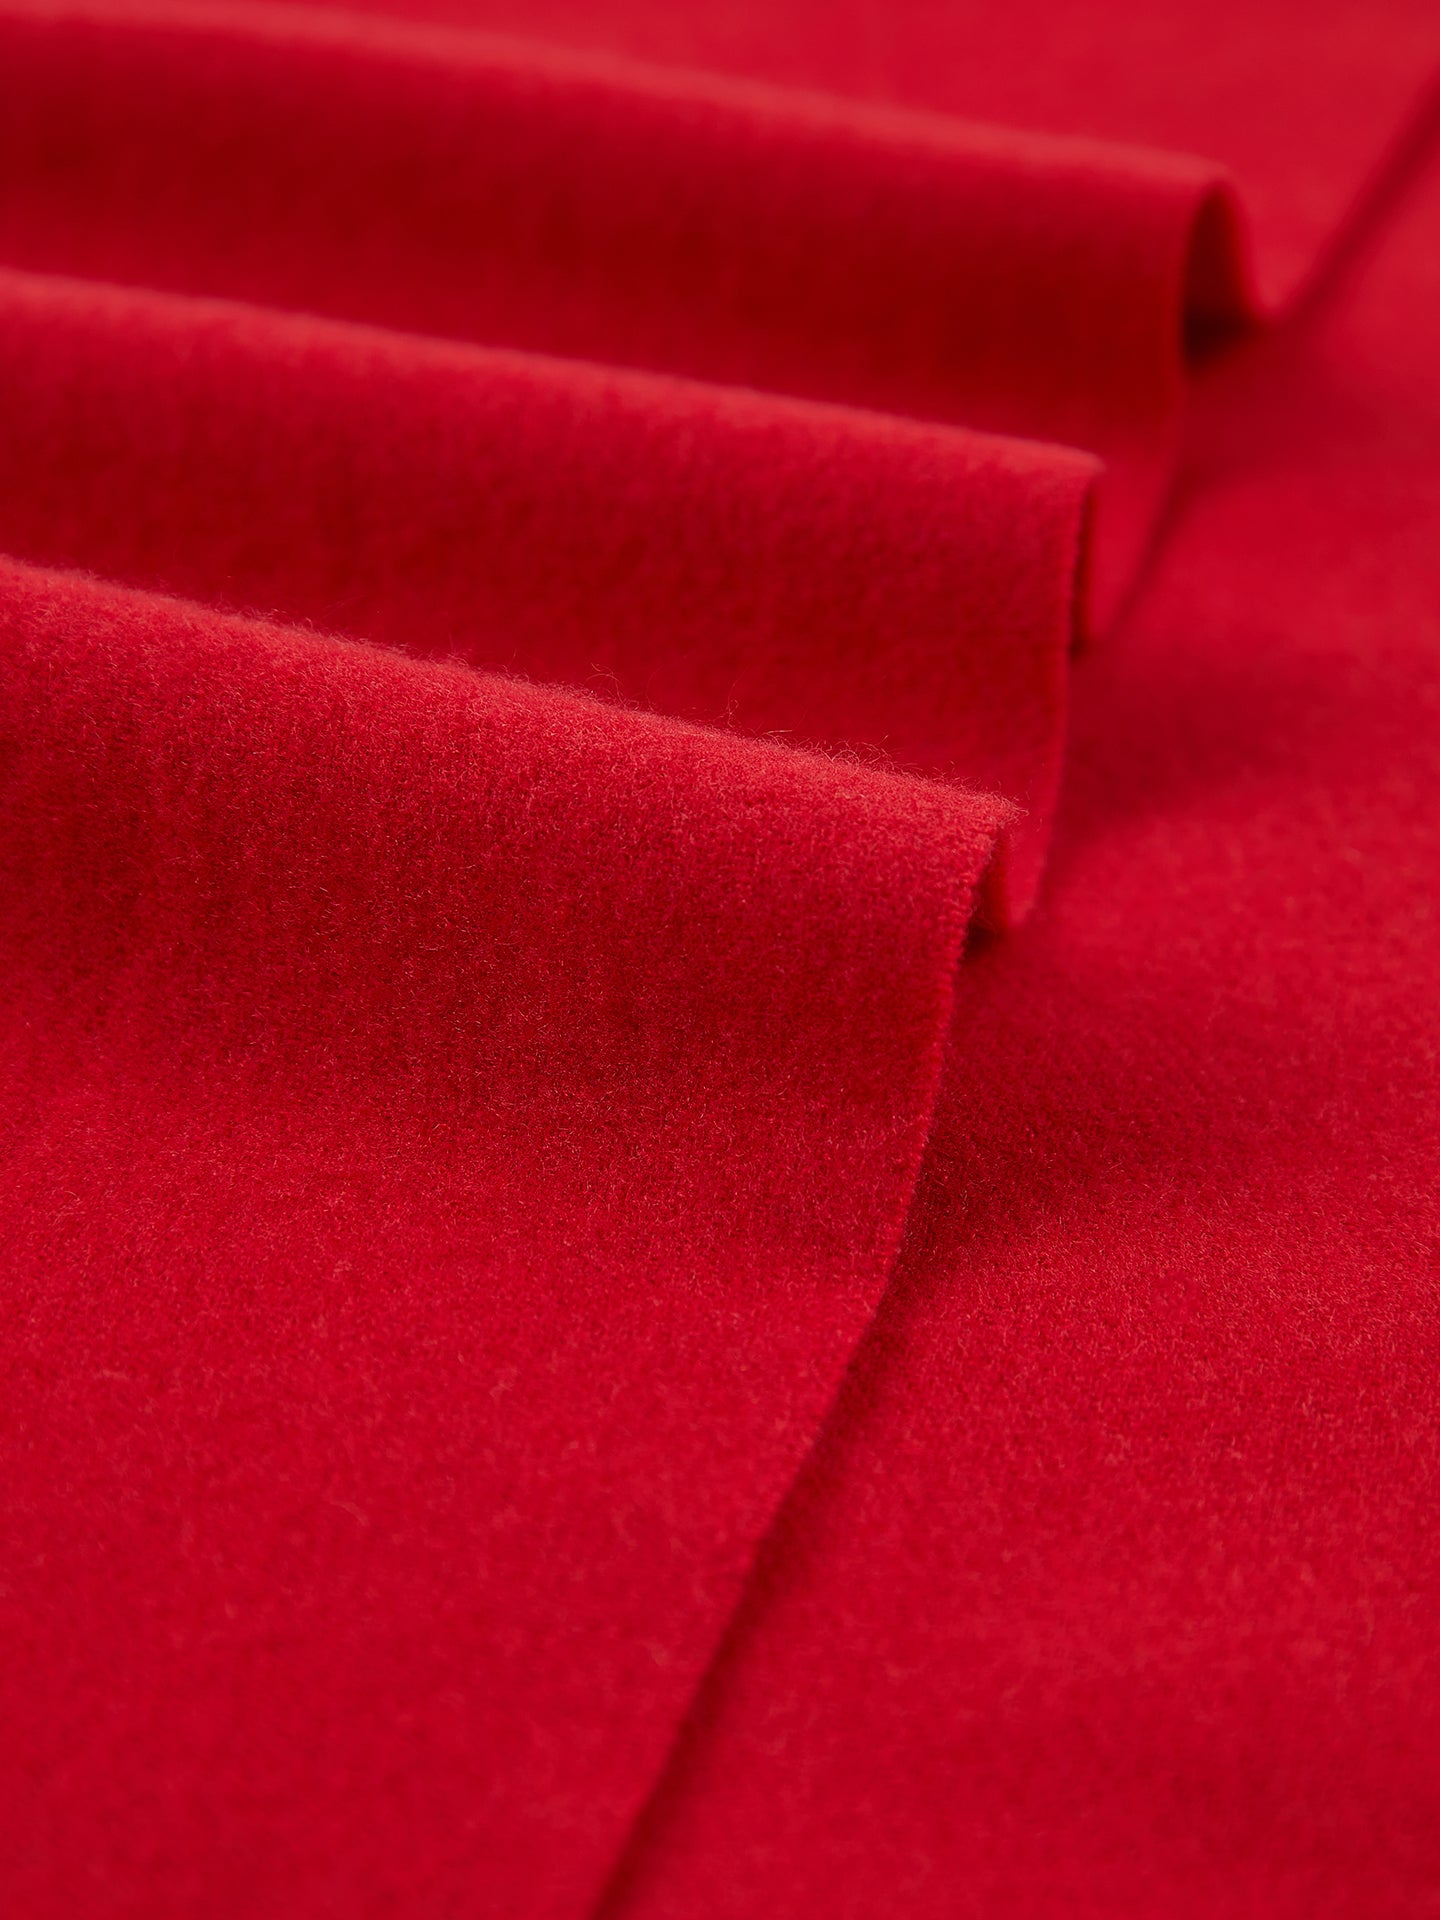 Écharpe avec franges en Cachemire unisex , couleur Rouge - Gobi Cashmere